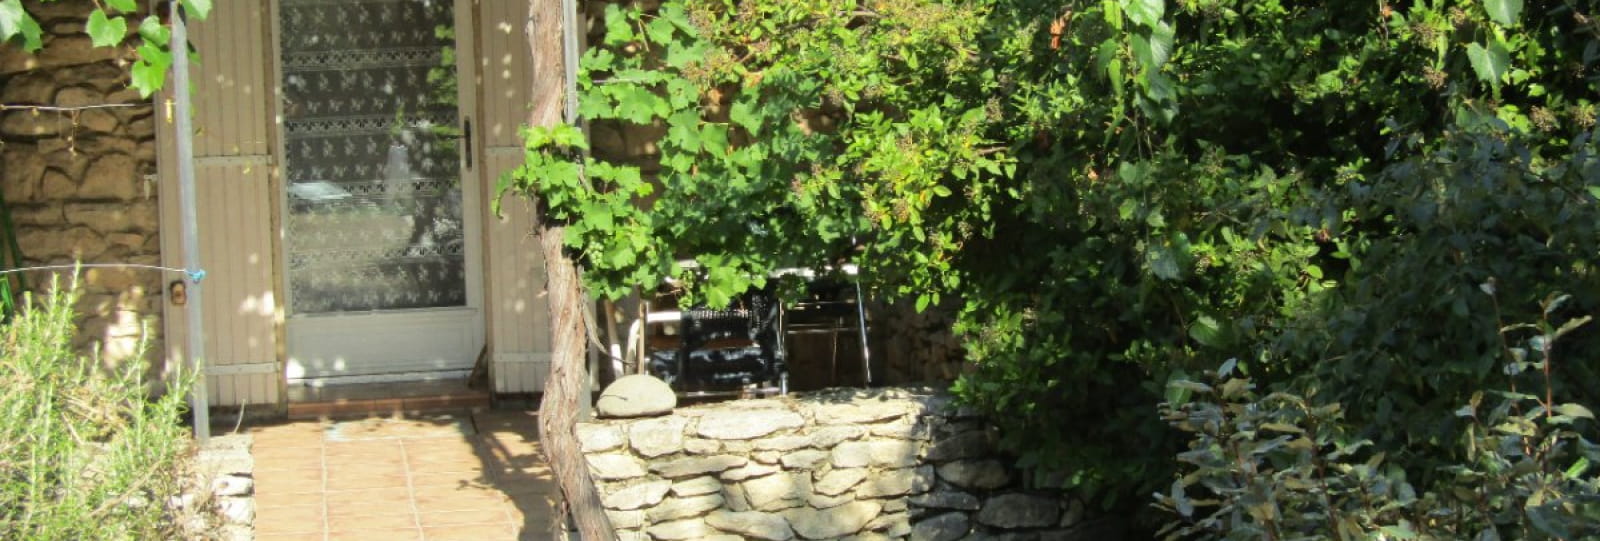 Terrasse ombragée d'une treille de vigne